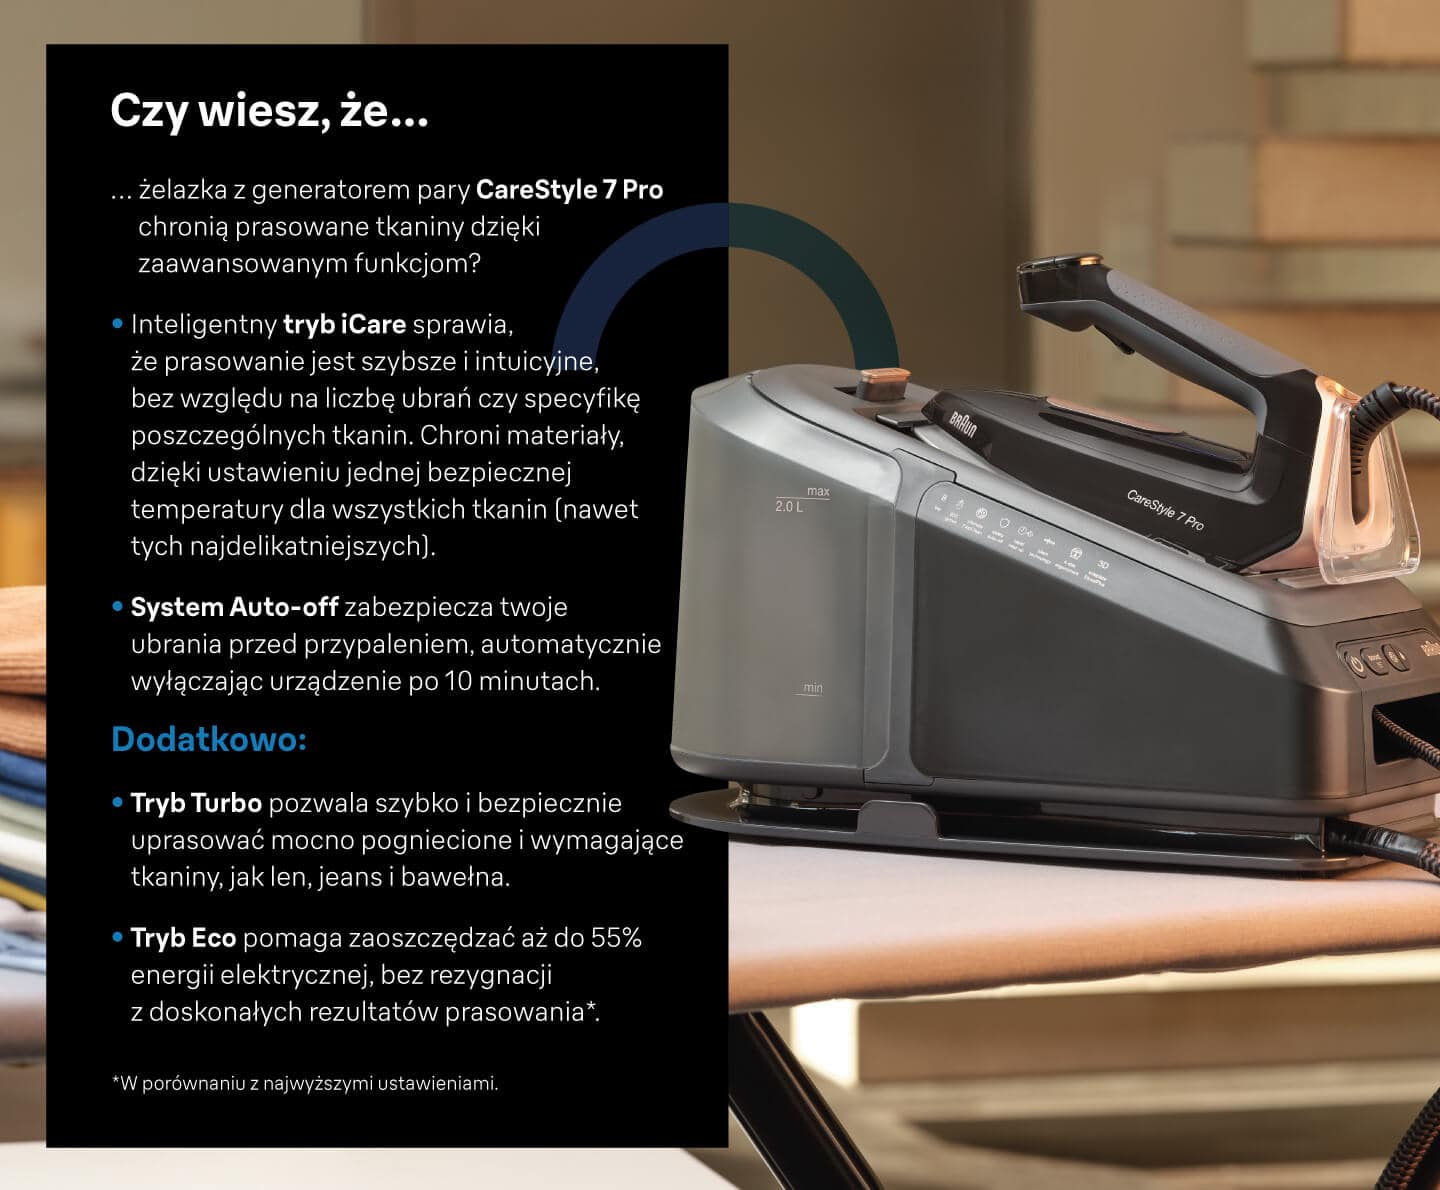 Wyróżnione certyfikatem ergonomii: Seria Braun CareStyle 7 PRO to pierwsze na świecie żelazka z certyfikatem ergonomii - infografika